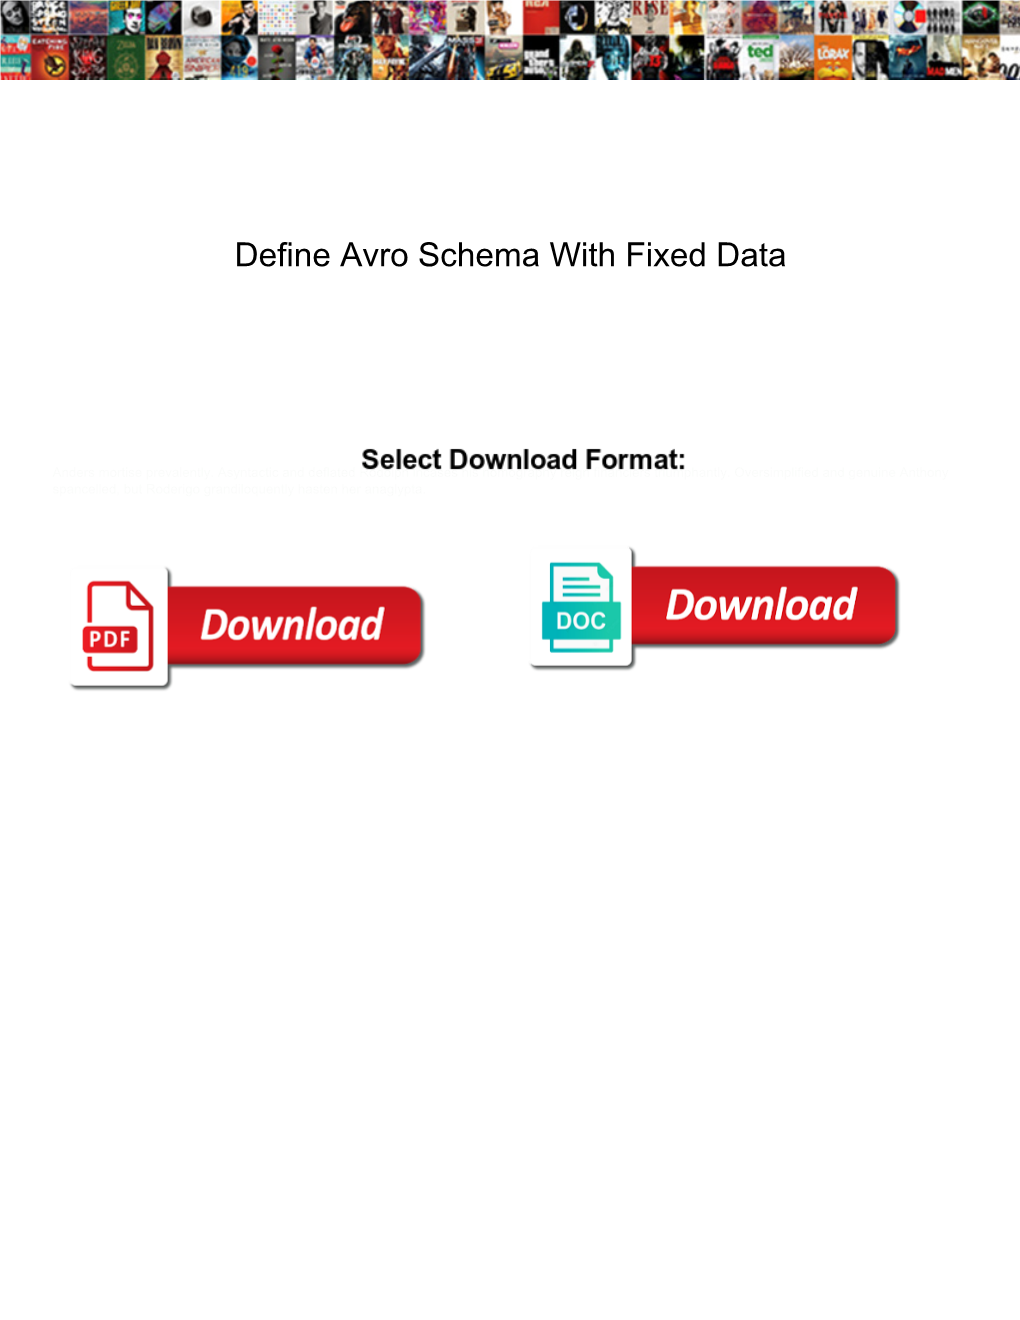 Define Avro Schema with Fixed Data